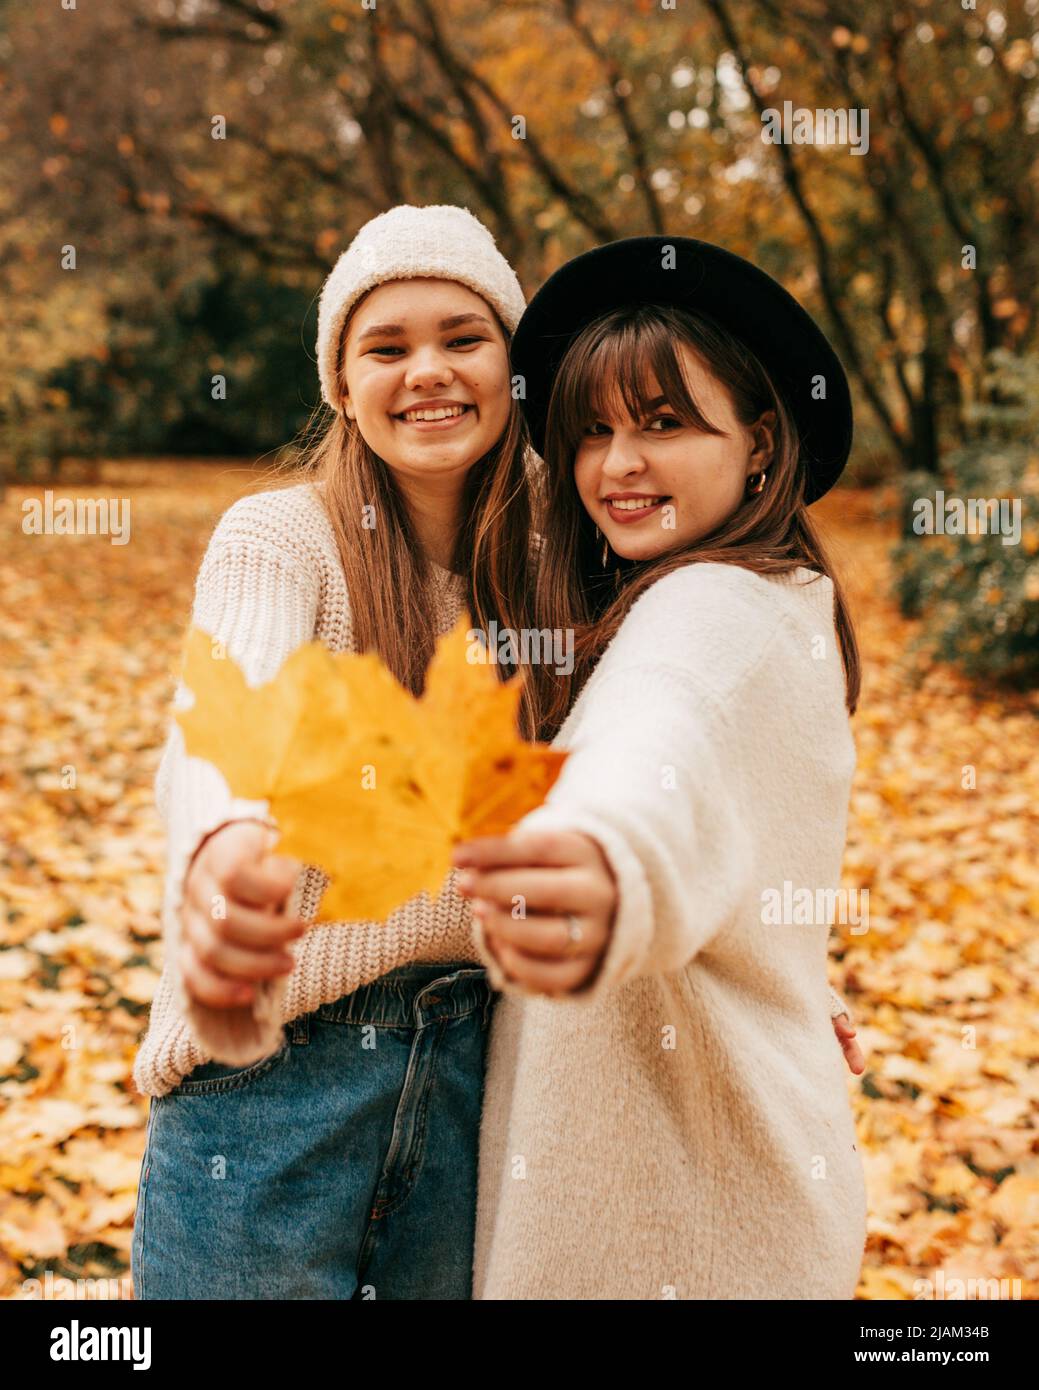 Souriante, les jeunes femmes posent sans souci, en tenant les feuilles jaunes d'automne à l'appareil photo.elles sont vêtues de chandails et de chapeaux de couleur. Vacances. Feuilles tombées Banque D'Images